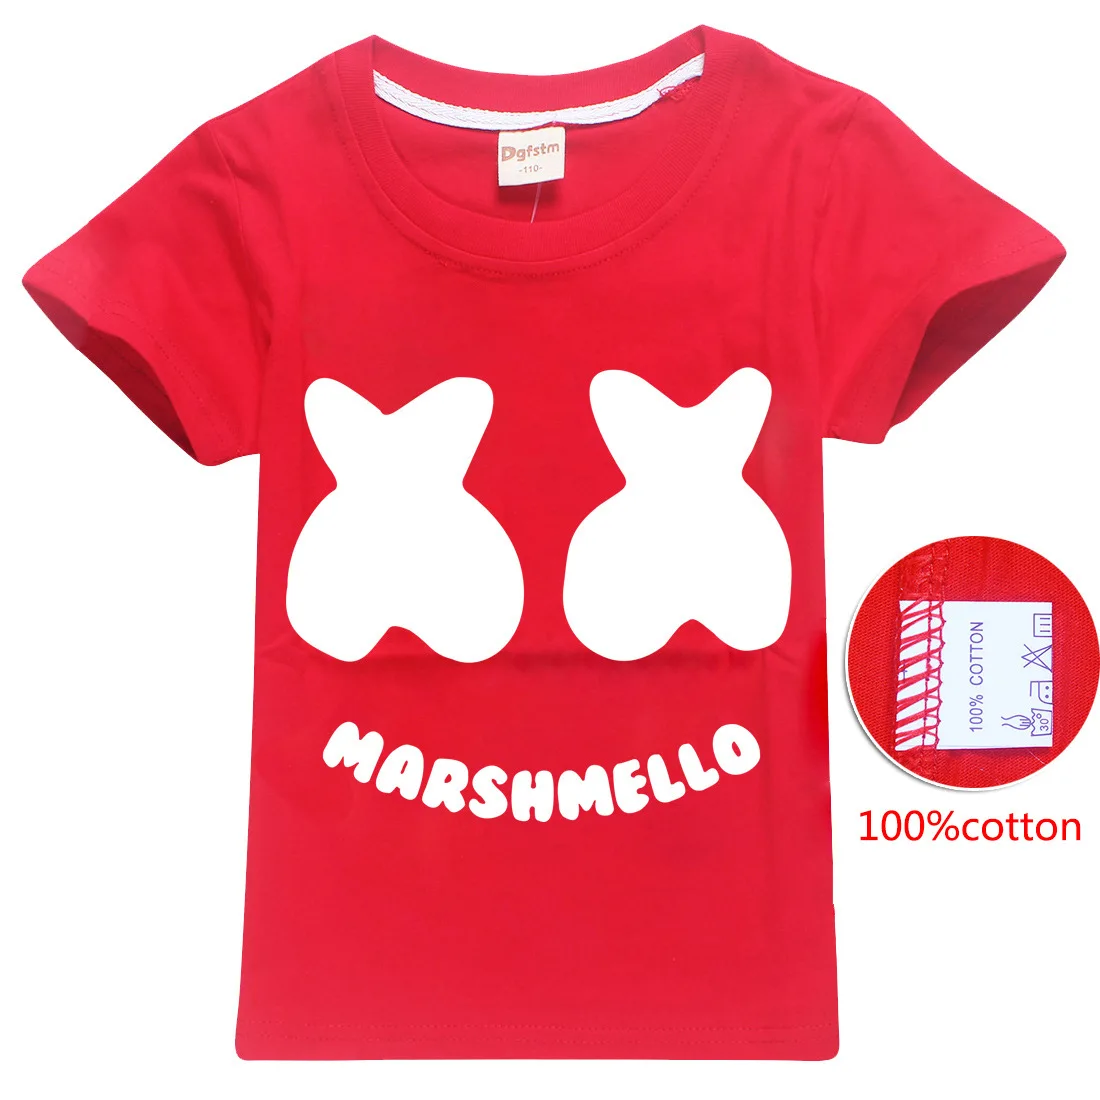 Натуральный хлопок! Marshmello/футболка детская летняя футболка с короткими рукавами для крупных детей 8429